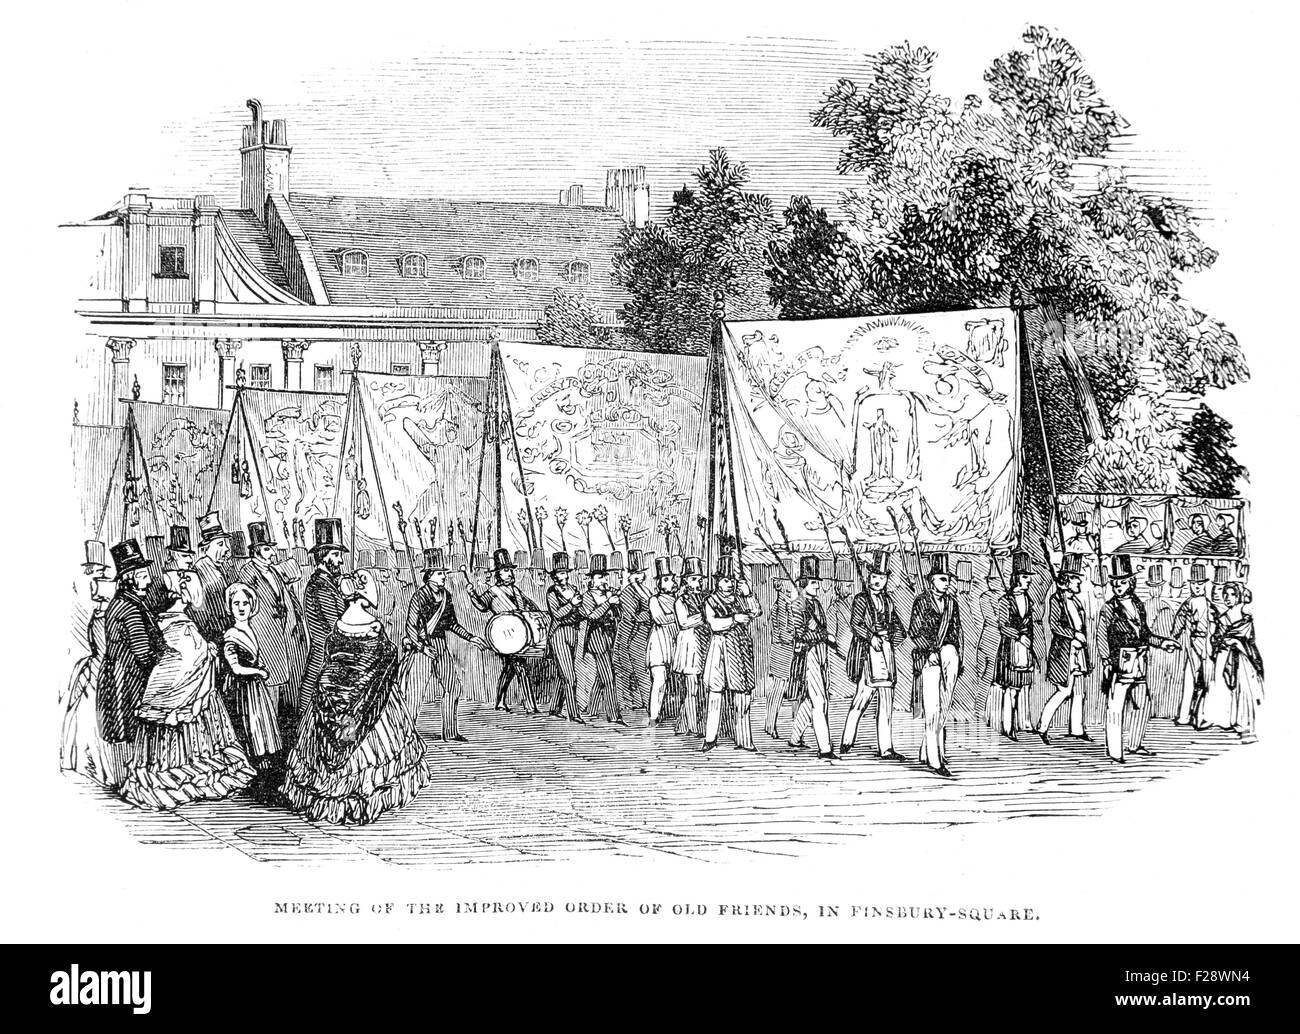 Réunion de l'amélioration de l'ordre de vieux amis à Finsbury Square, l'Illustrated London News Juillet 1844 ; noir et blanc Illustration Banque D'Images